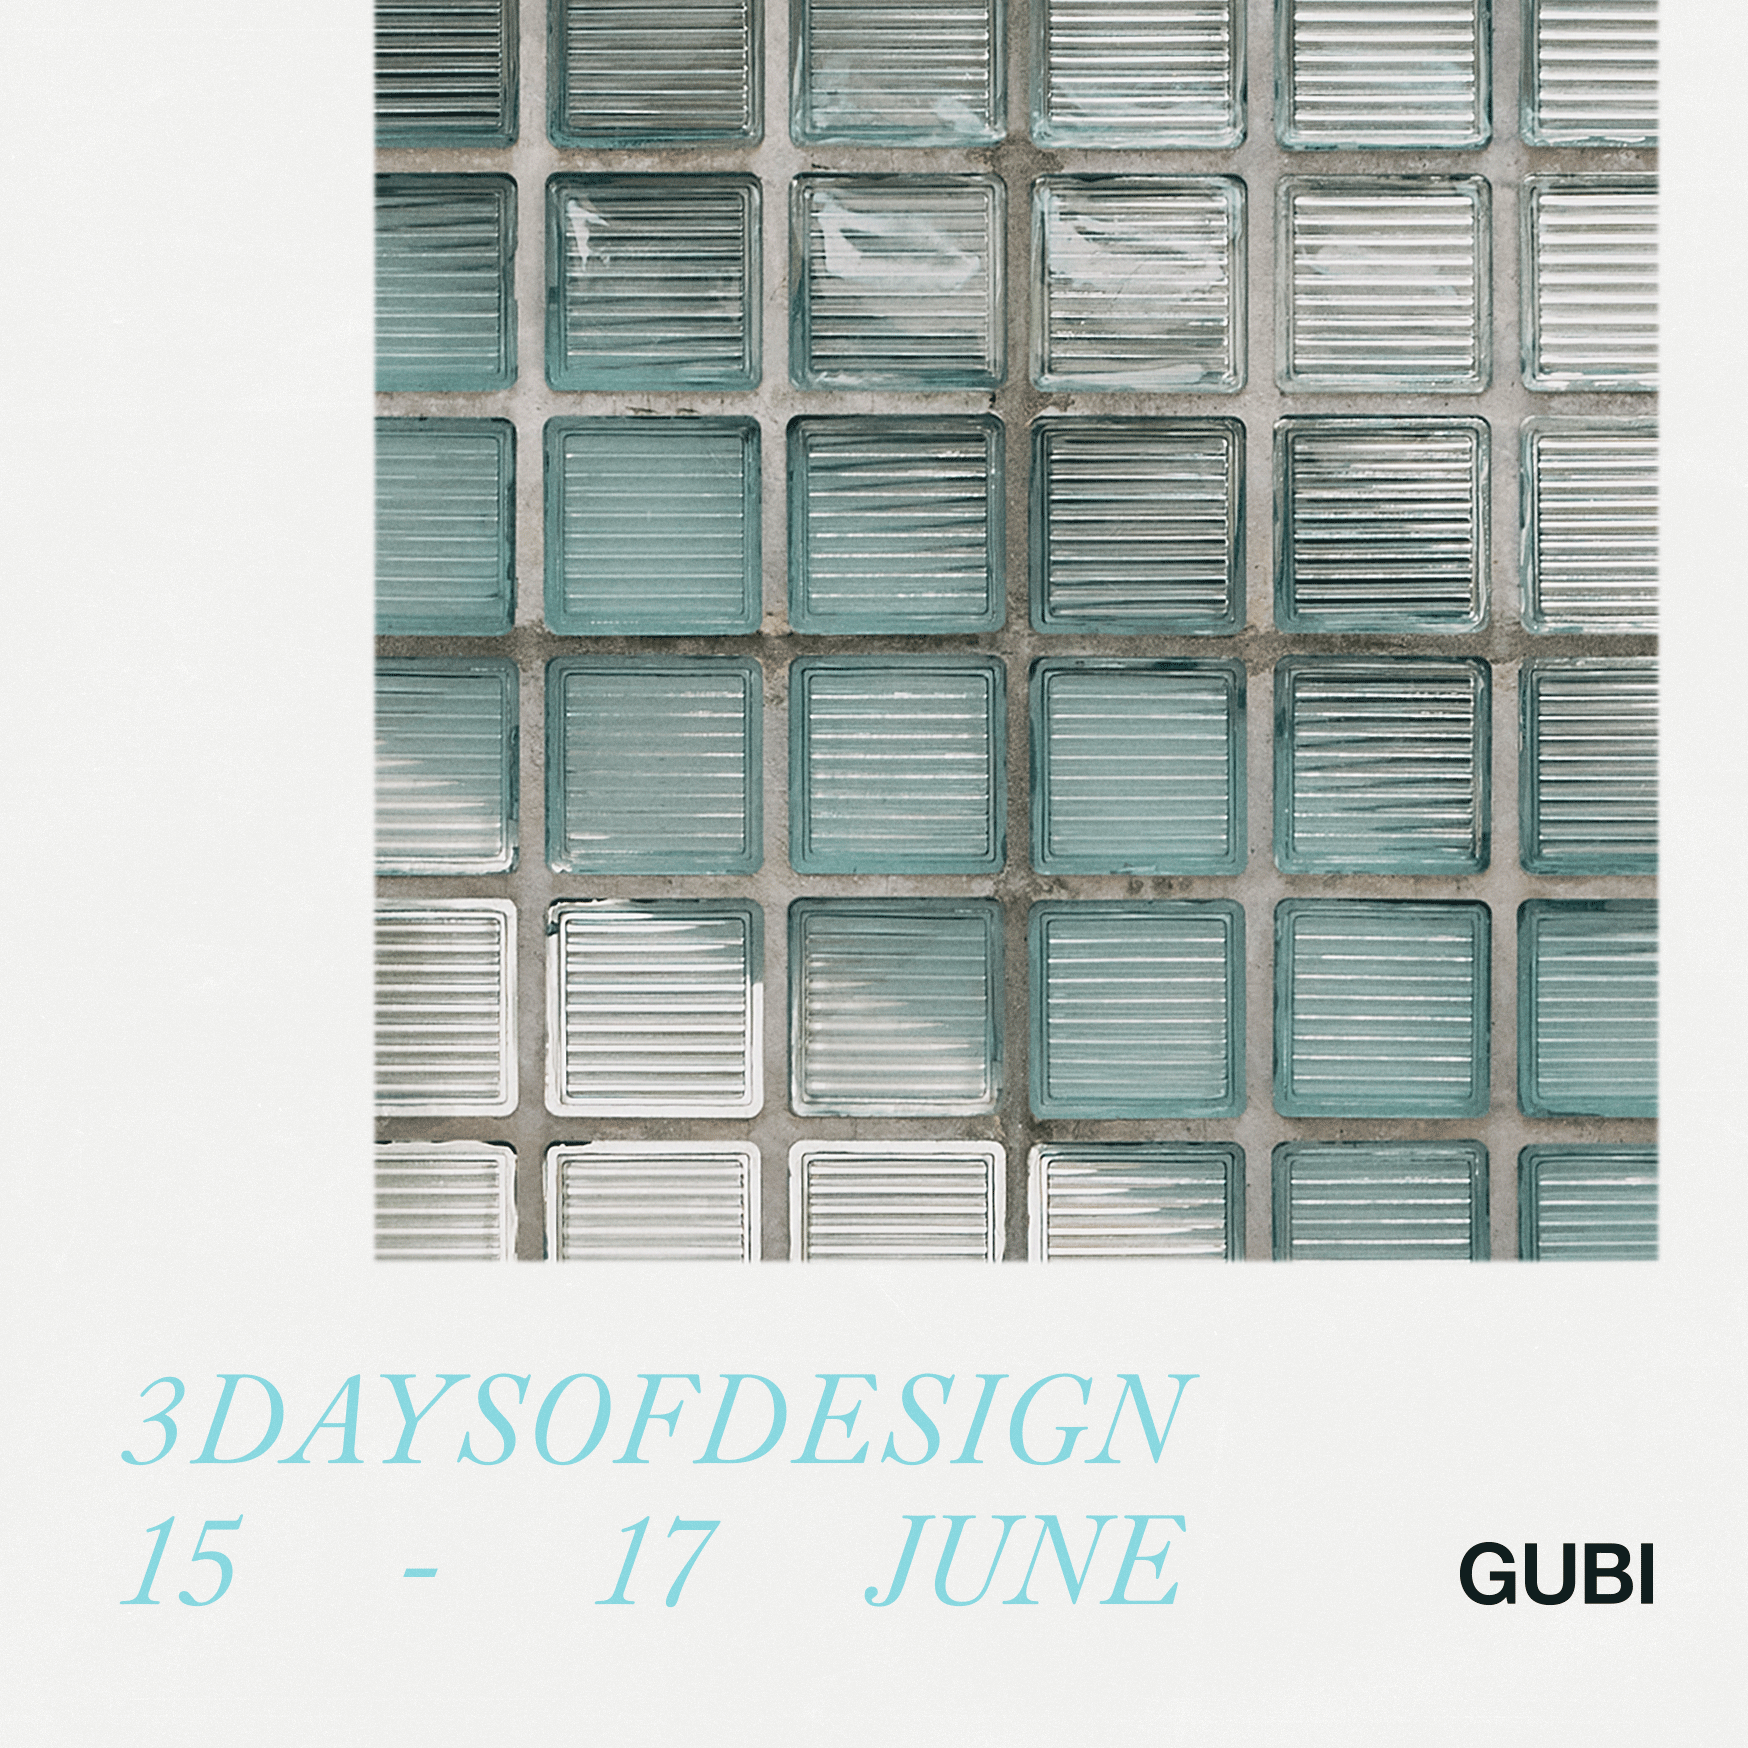 Uitnodiging 3 days of design - Gubi